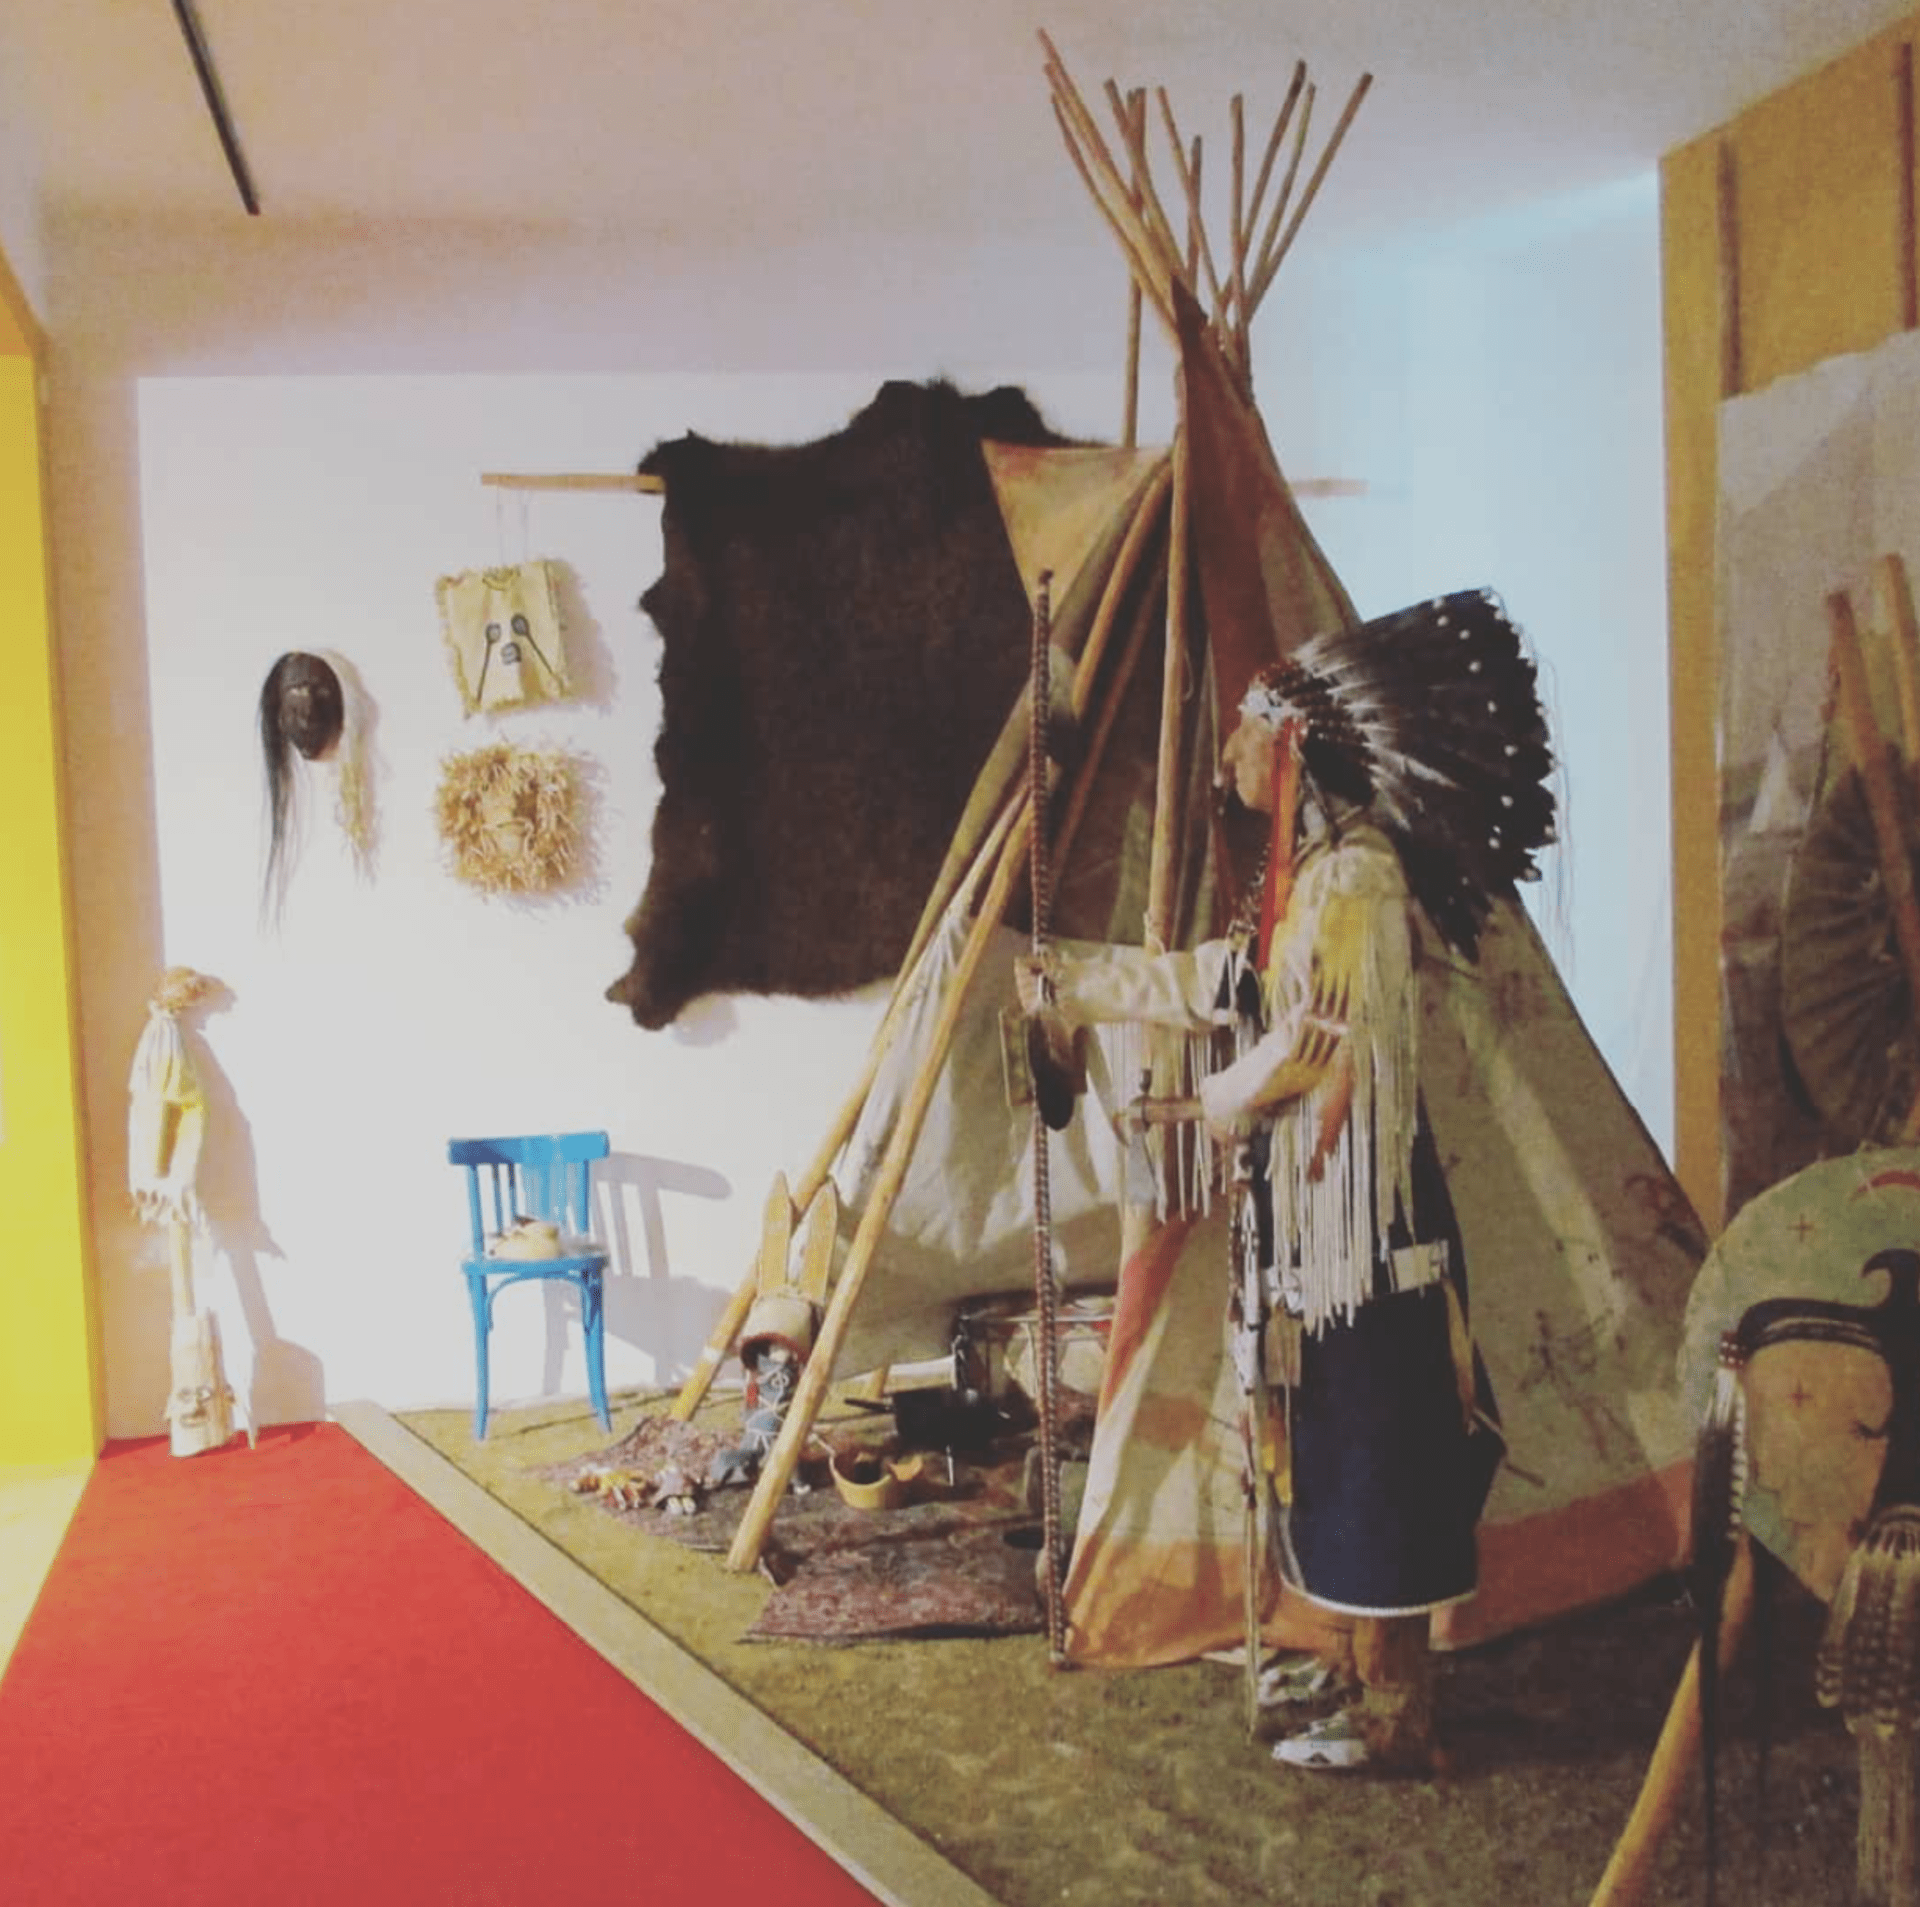 Antropologická expozice v Muzeu Dr. Aleše Hrdičky